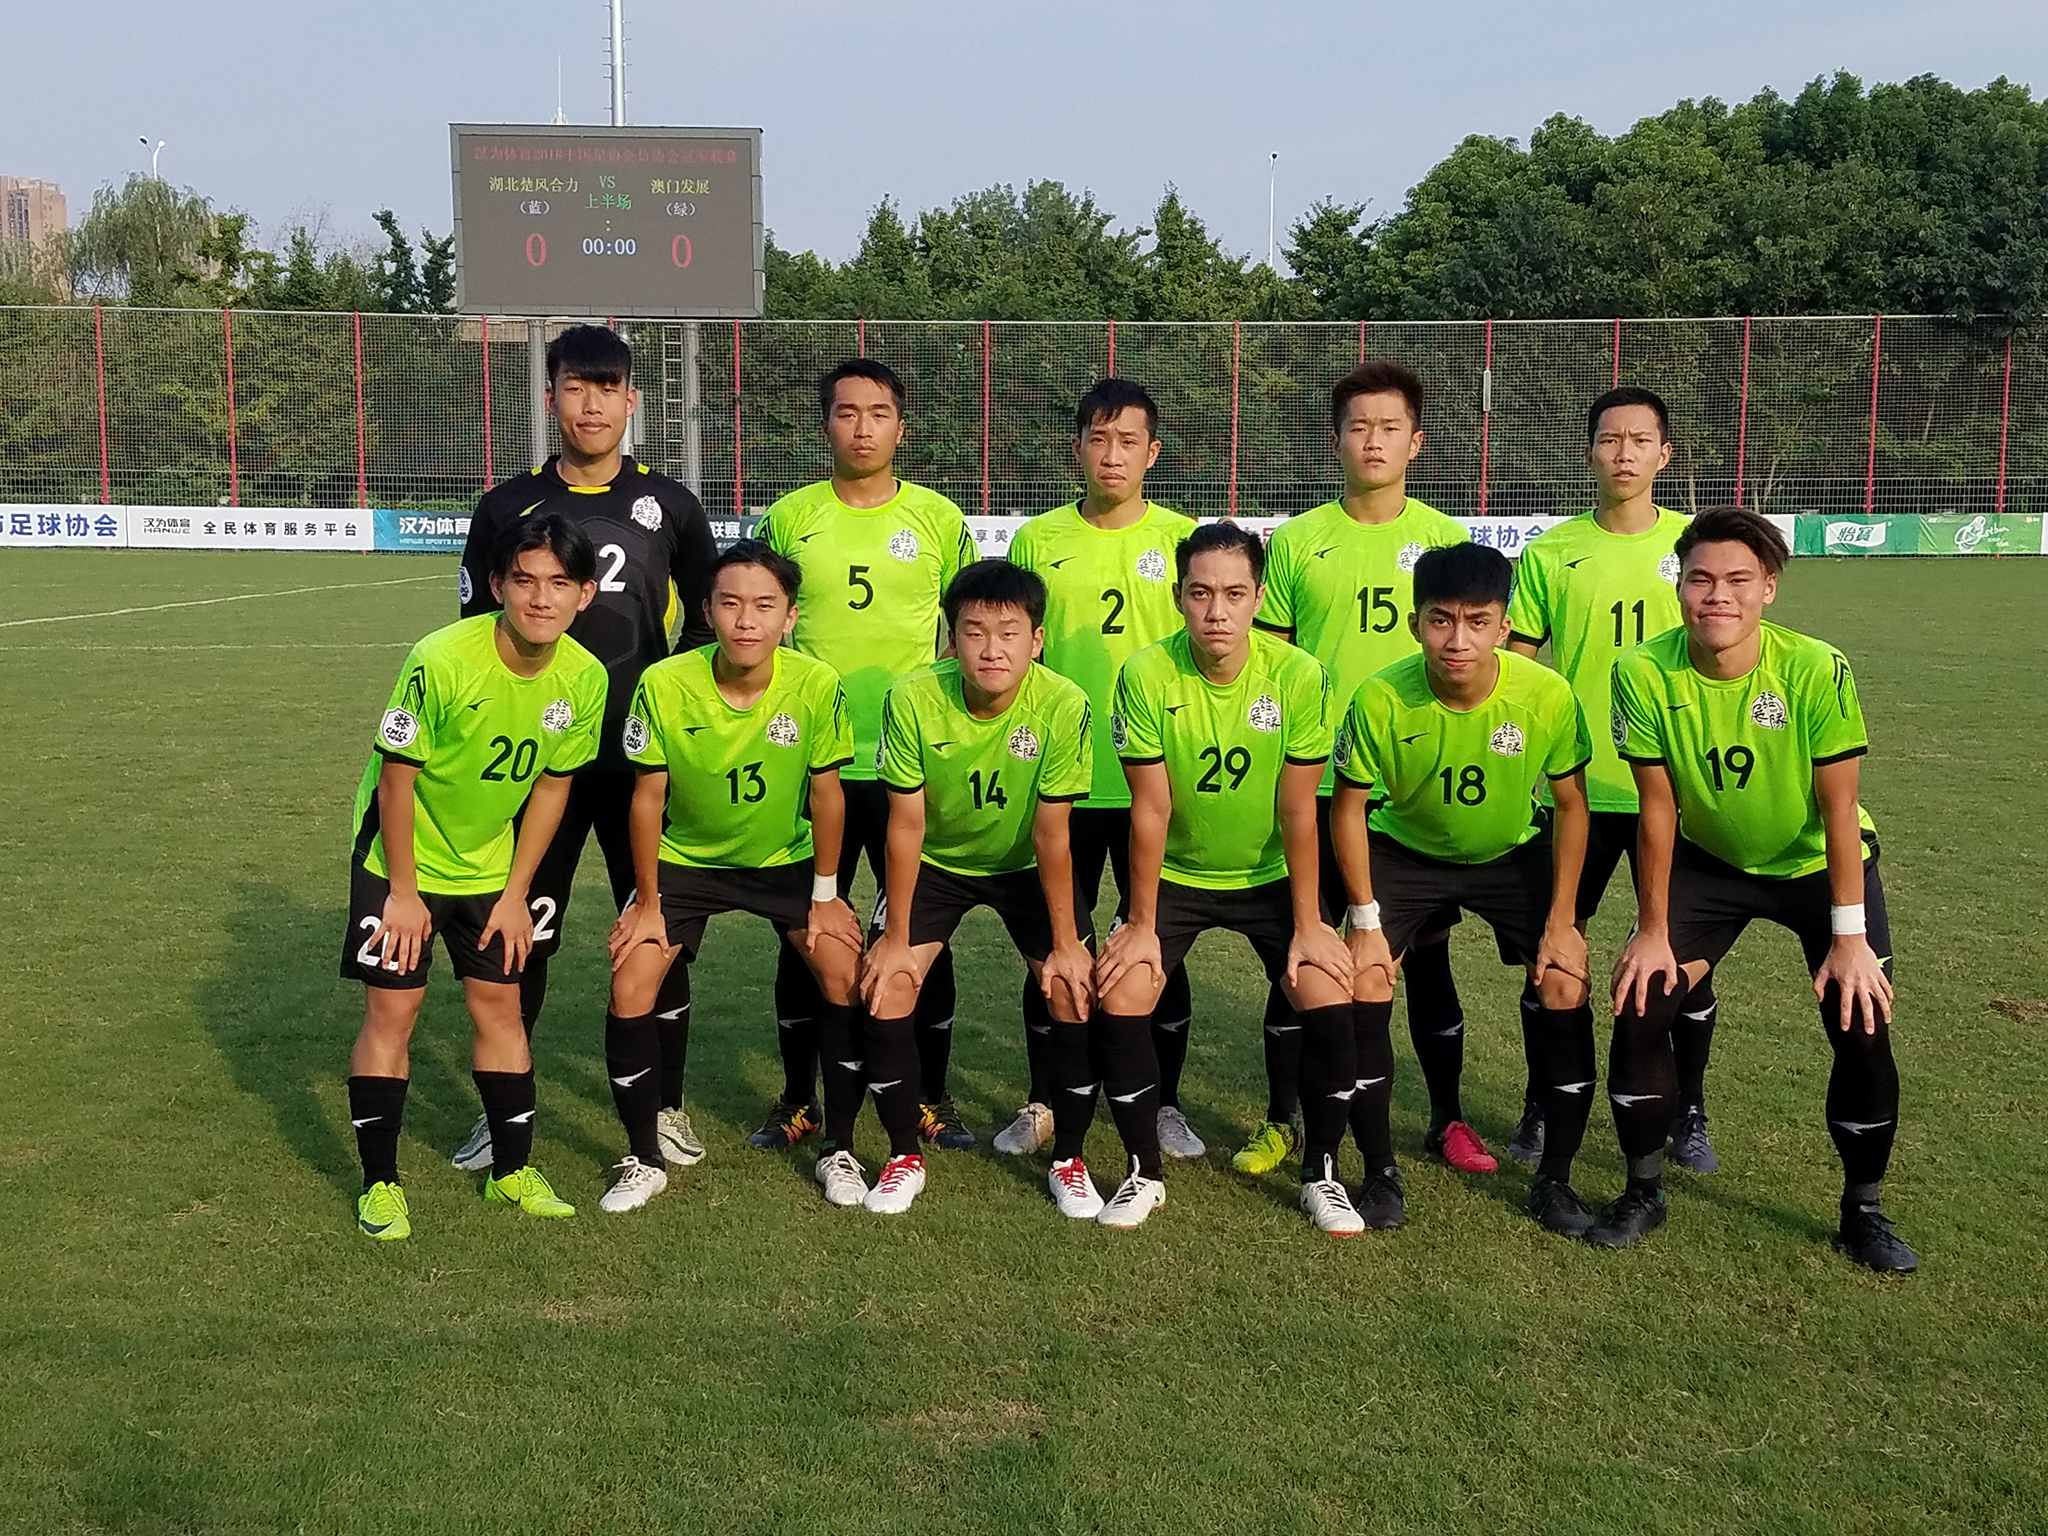 Futebol | Equipa de Macau joga apuramento na 4ª divisão chinesa